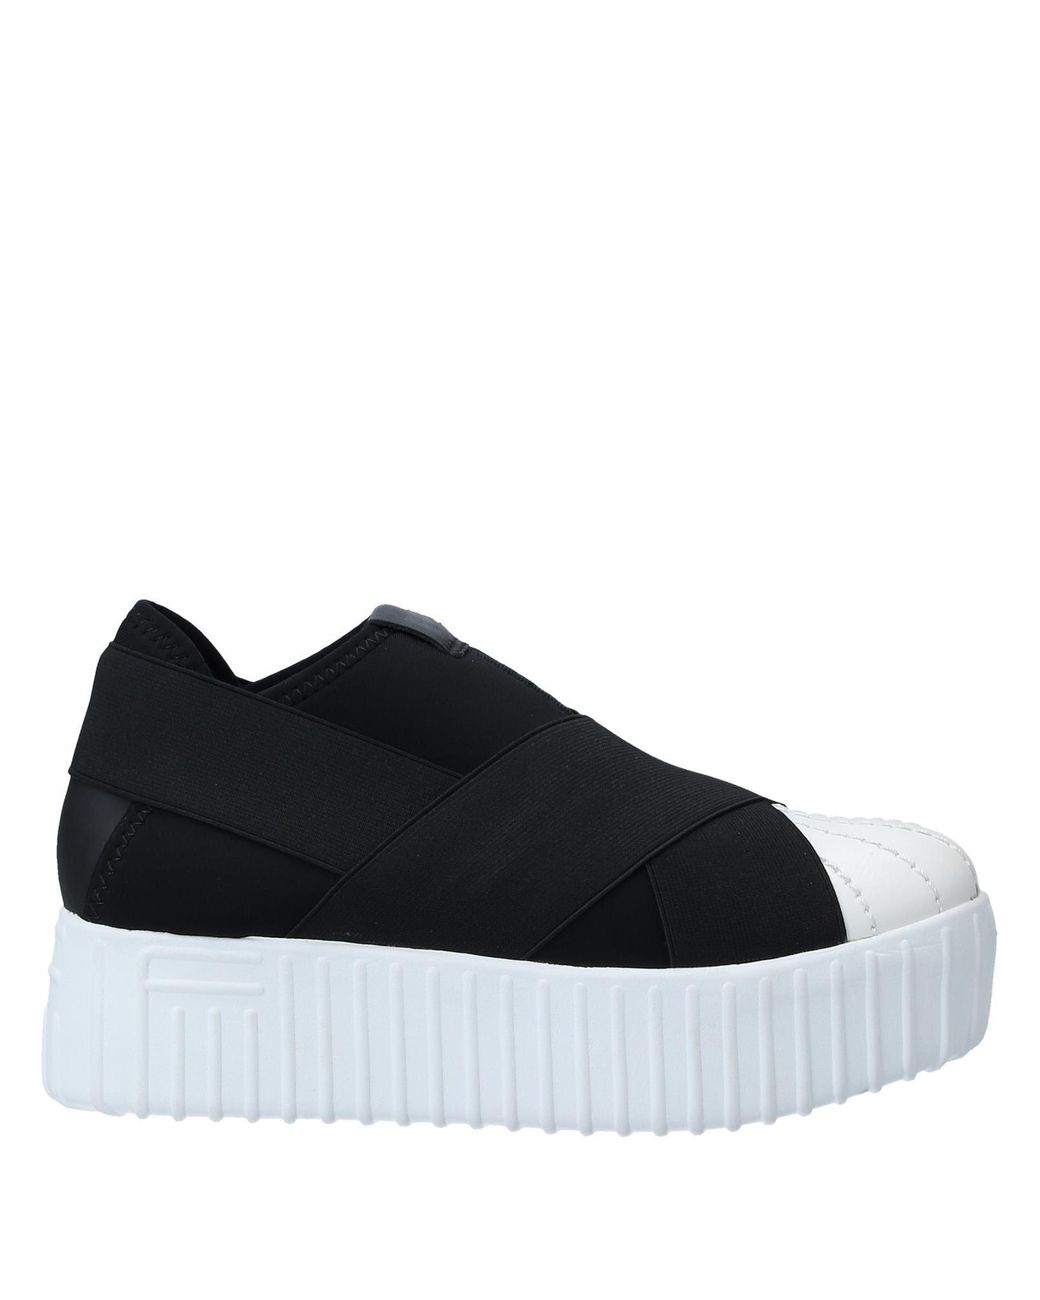 Fessura Neoprene Low-tops & Sneakers in Black - Save 55% - Lyst